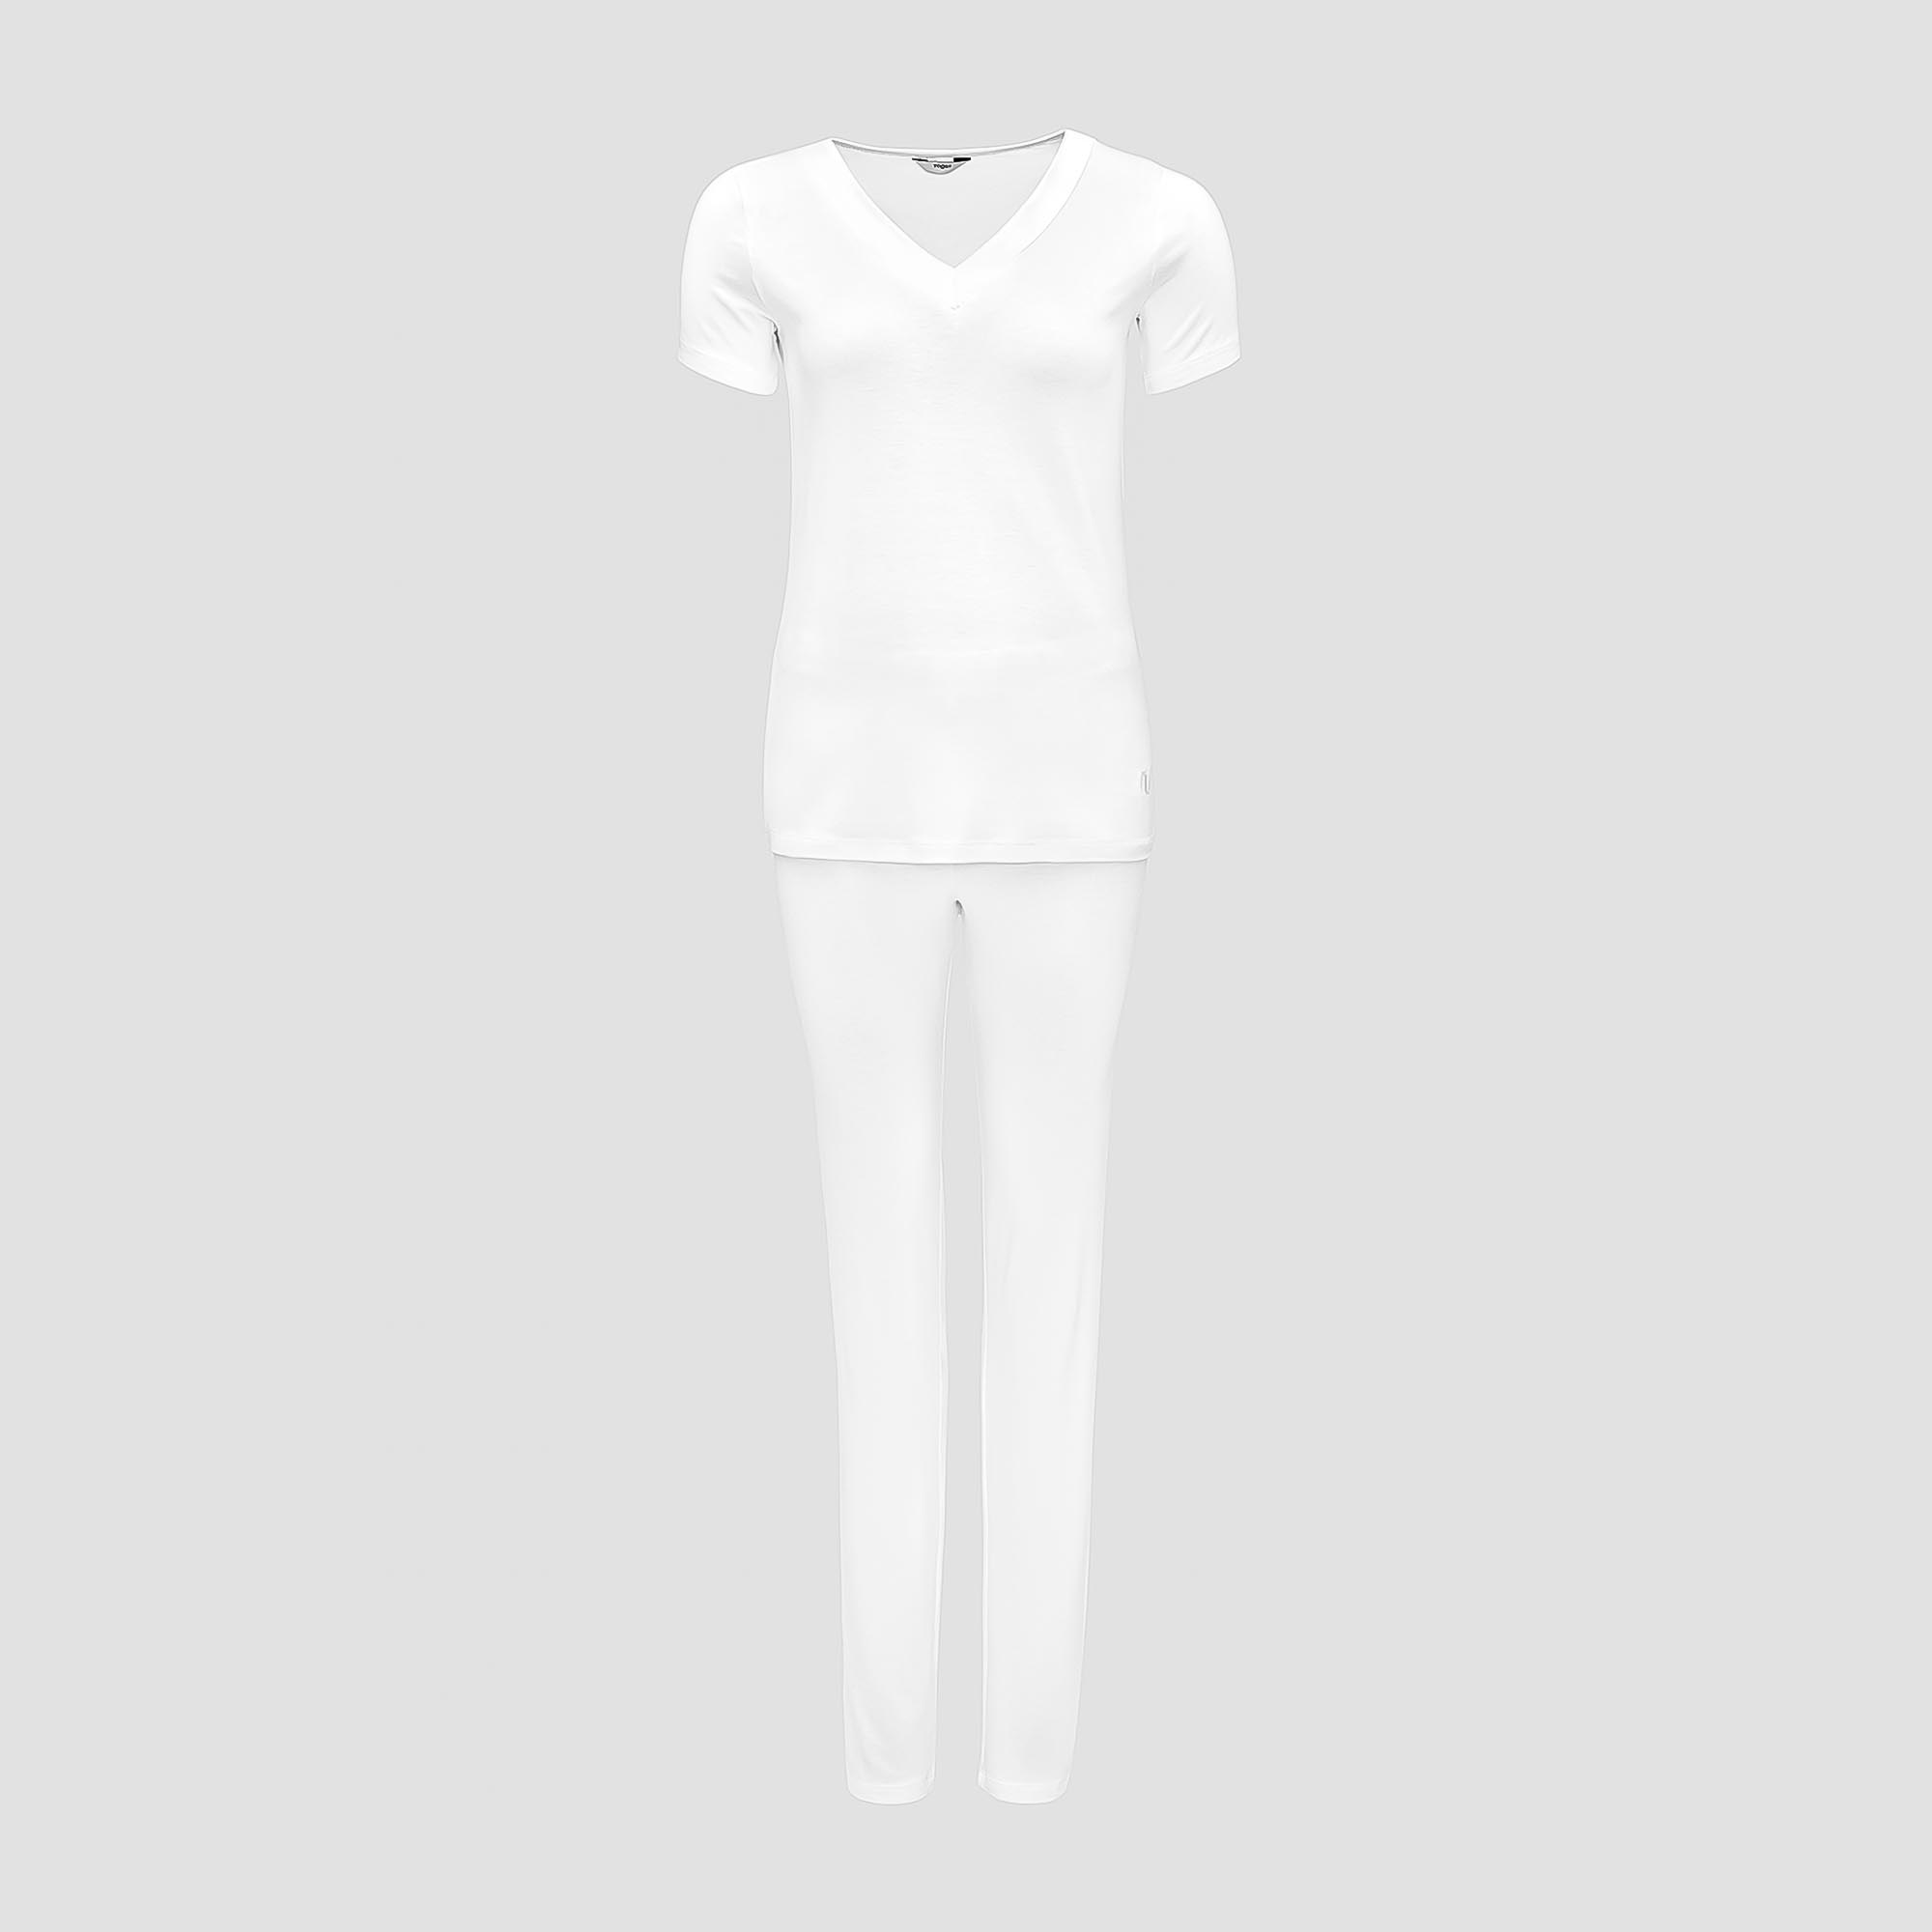 Пижама Togas Ингелла белая женская XL(50) 2 предмета пижама рубашка брюки